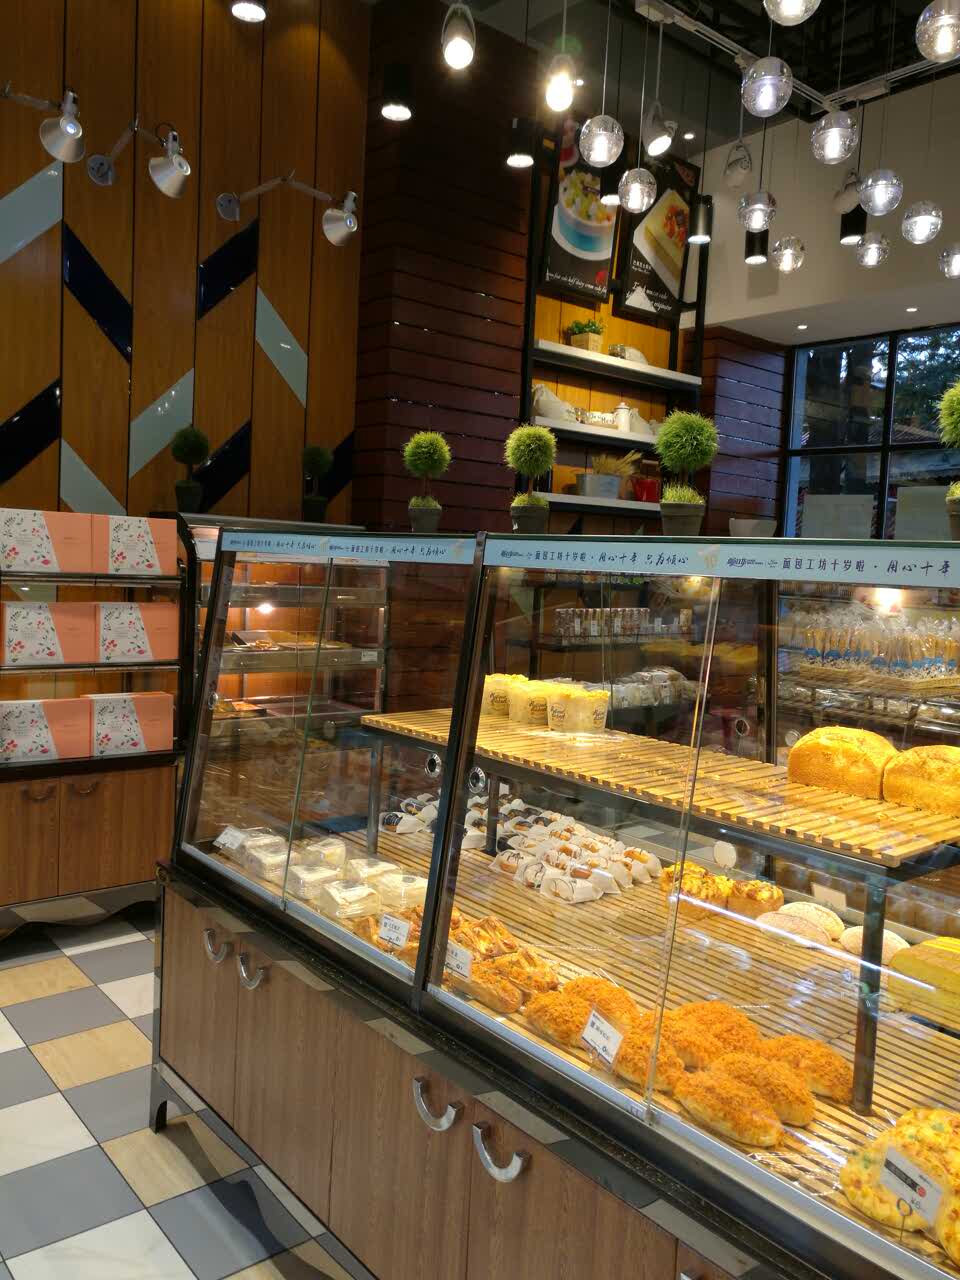 2021面包工坊(翠湖店)美食餐厅,店面整洁不错,服务态度好